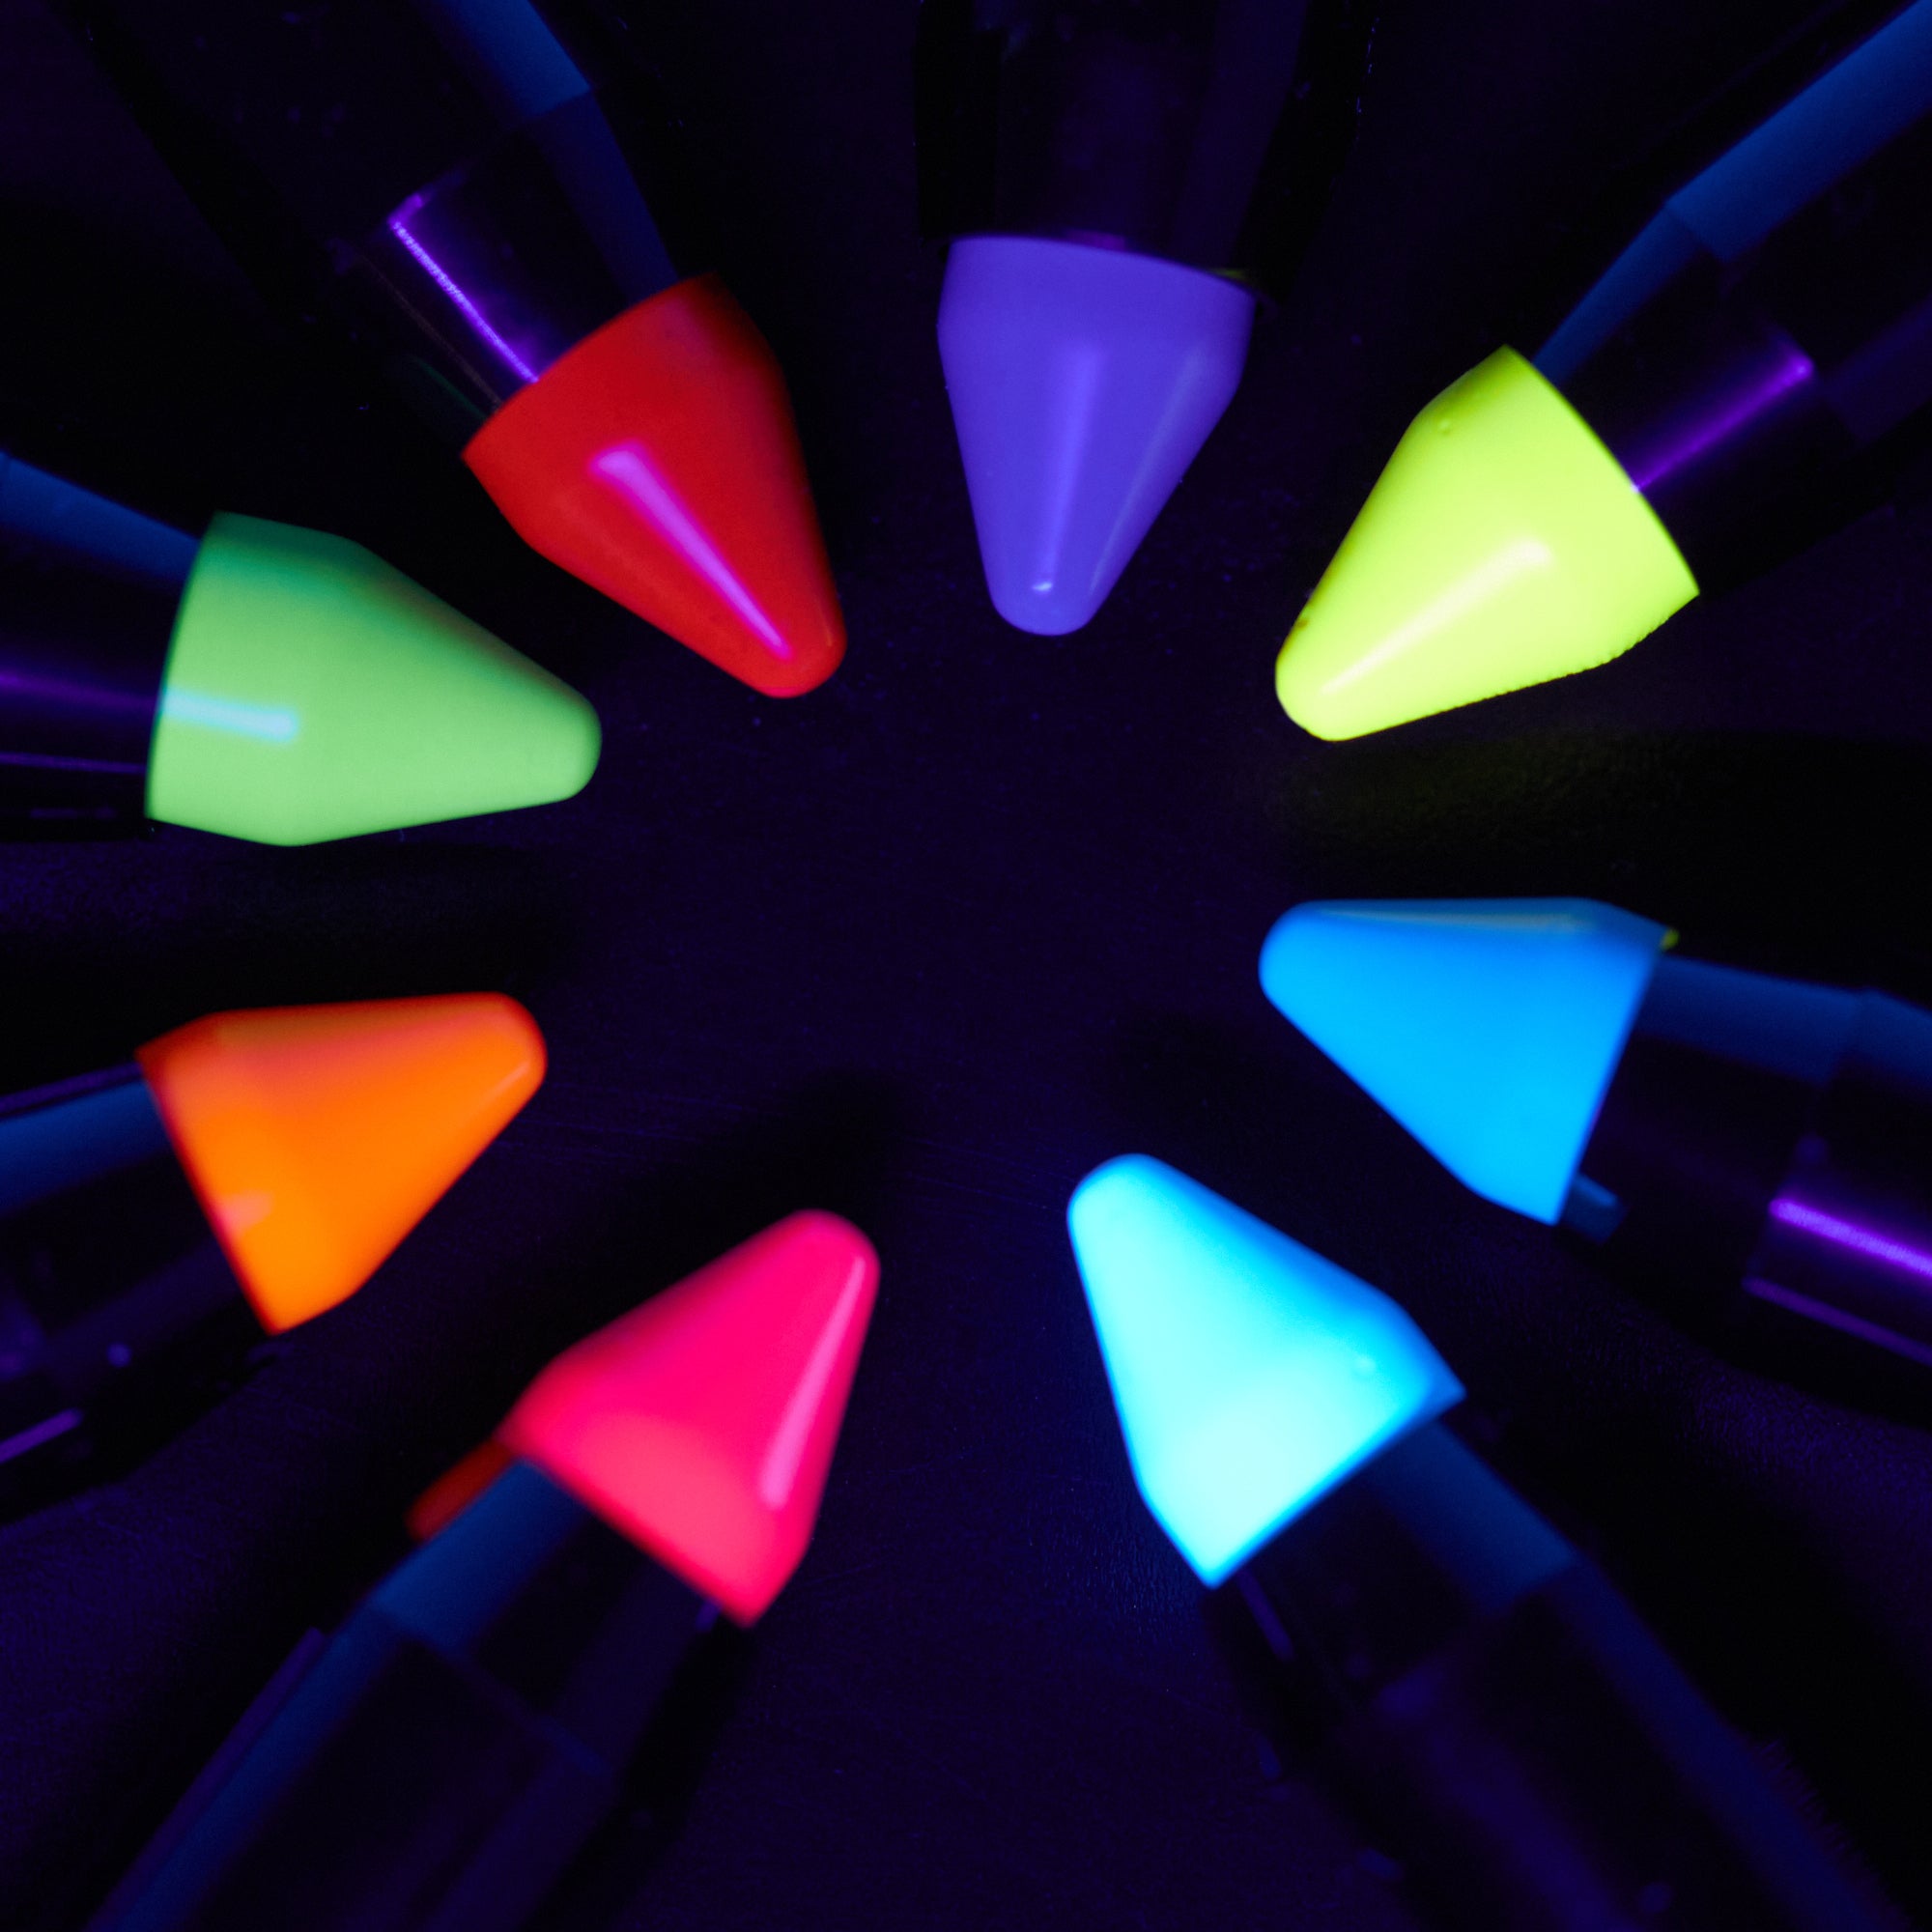 Moon Glow - Crayon de maquillage UV néon pour le visage et le corps - Kit  intensif de 8 couleurs - Brille sous un éclairage UV